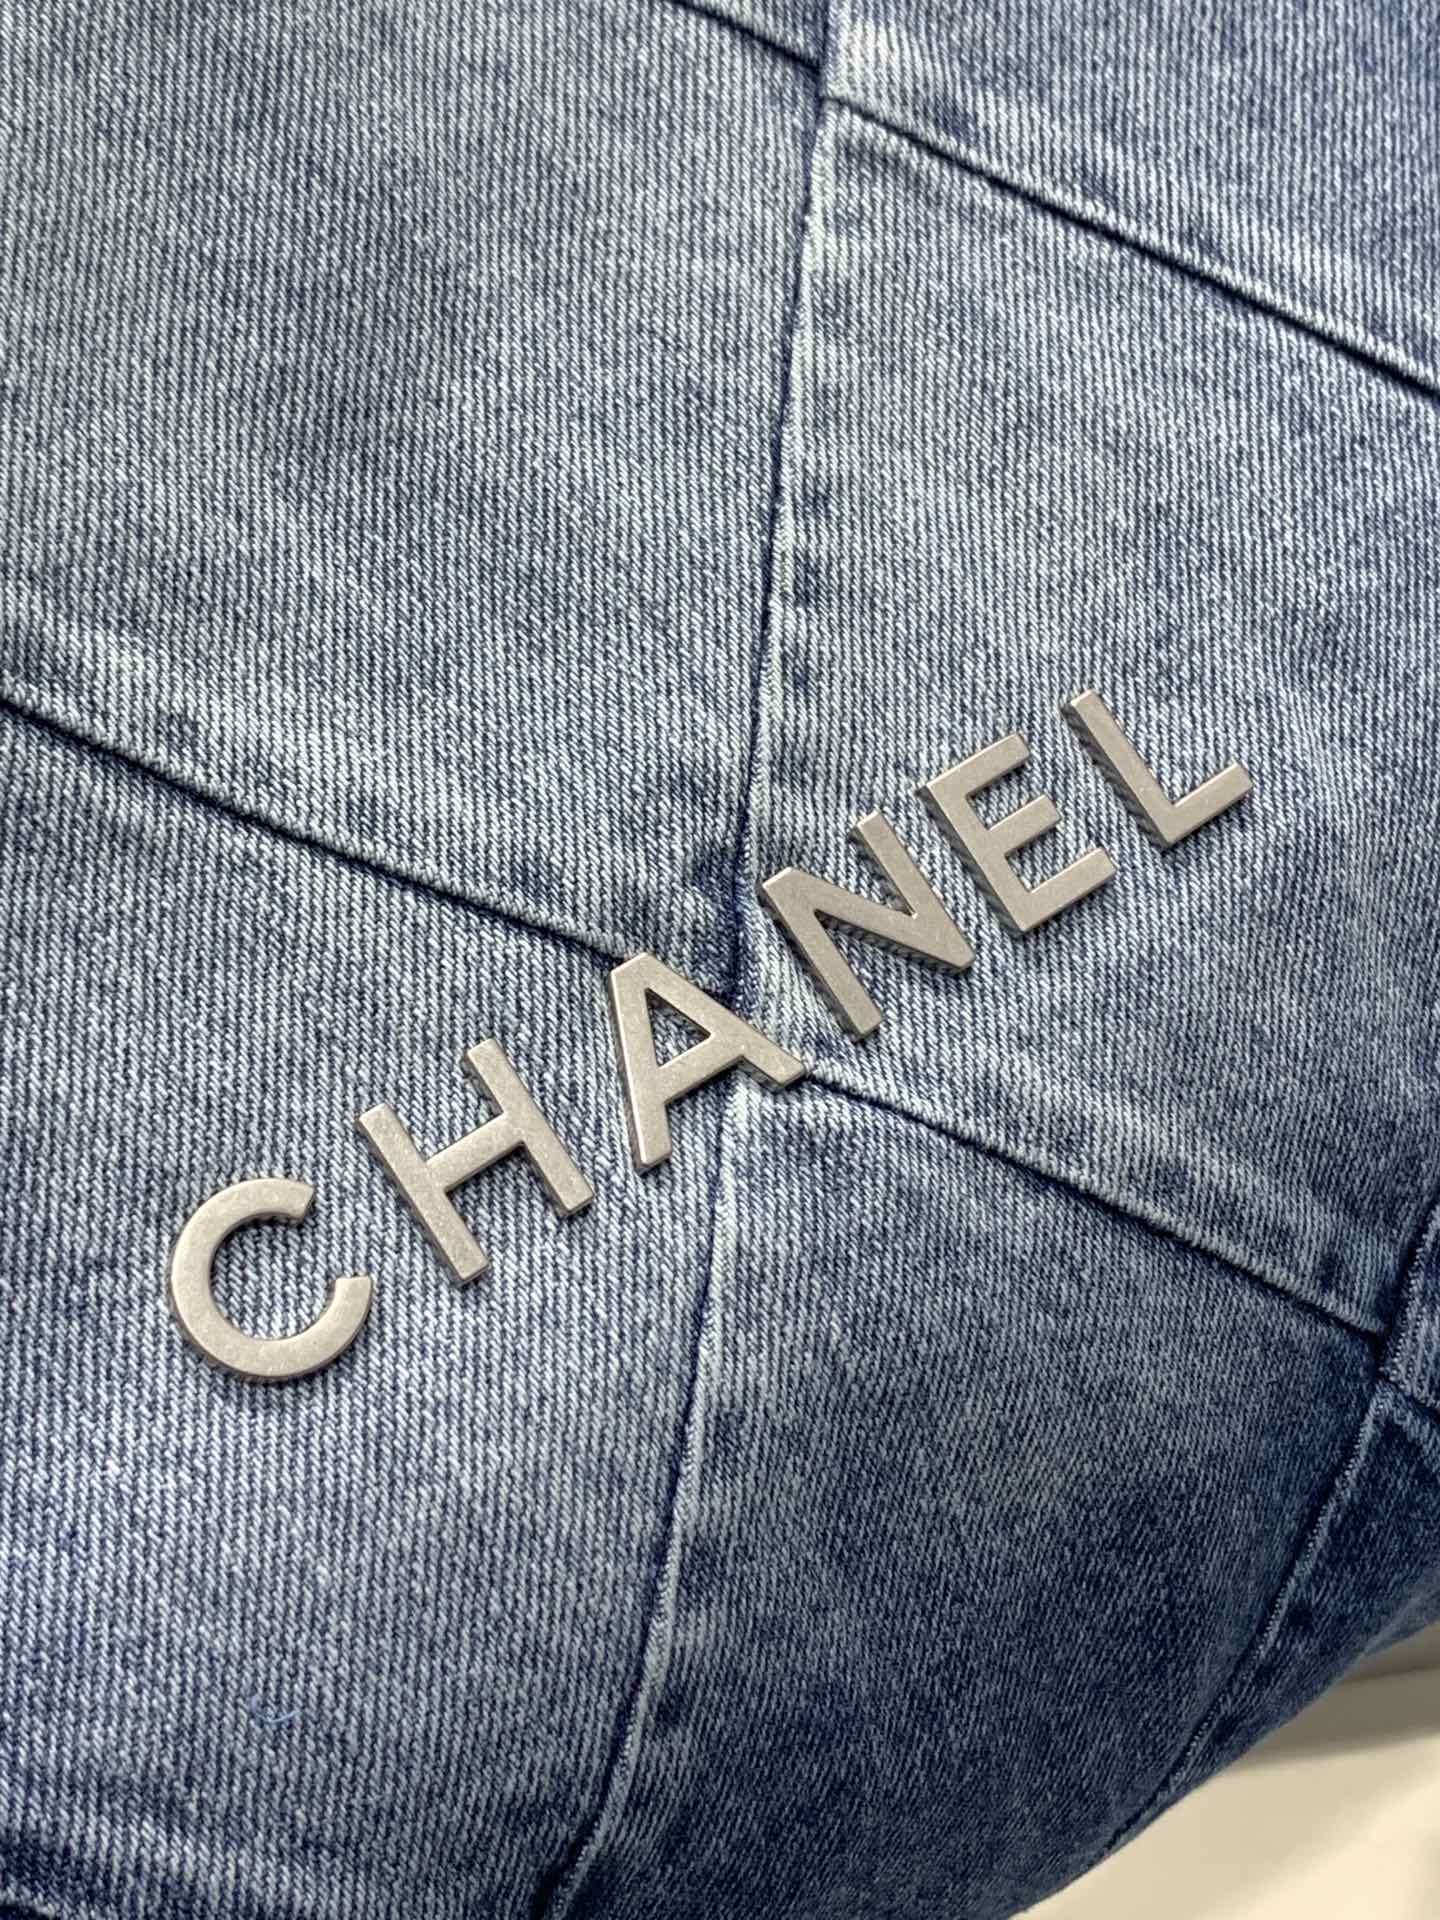 法国高端定制品Chane1AS3260#Chane123p牛仔垃圾购物袋！仔双肩包也挺惊喜！23c预告的